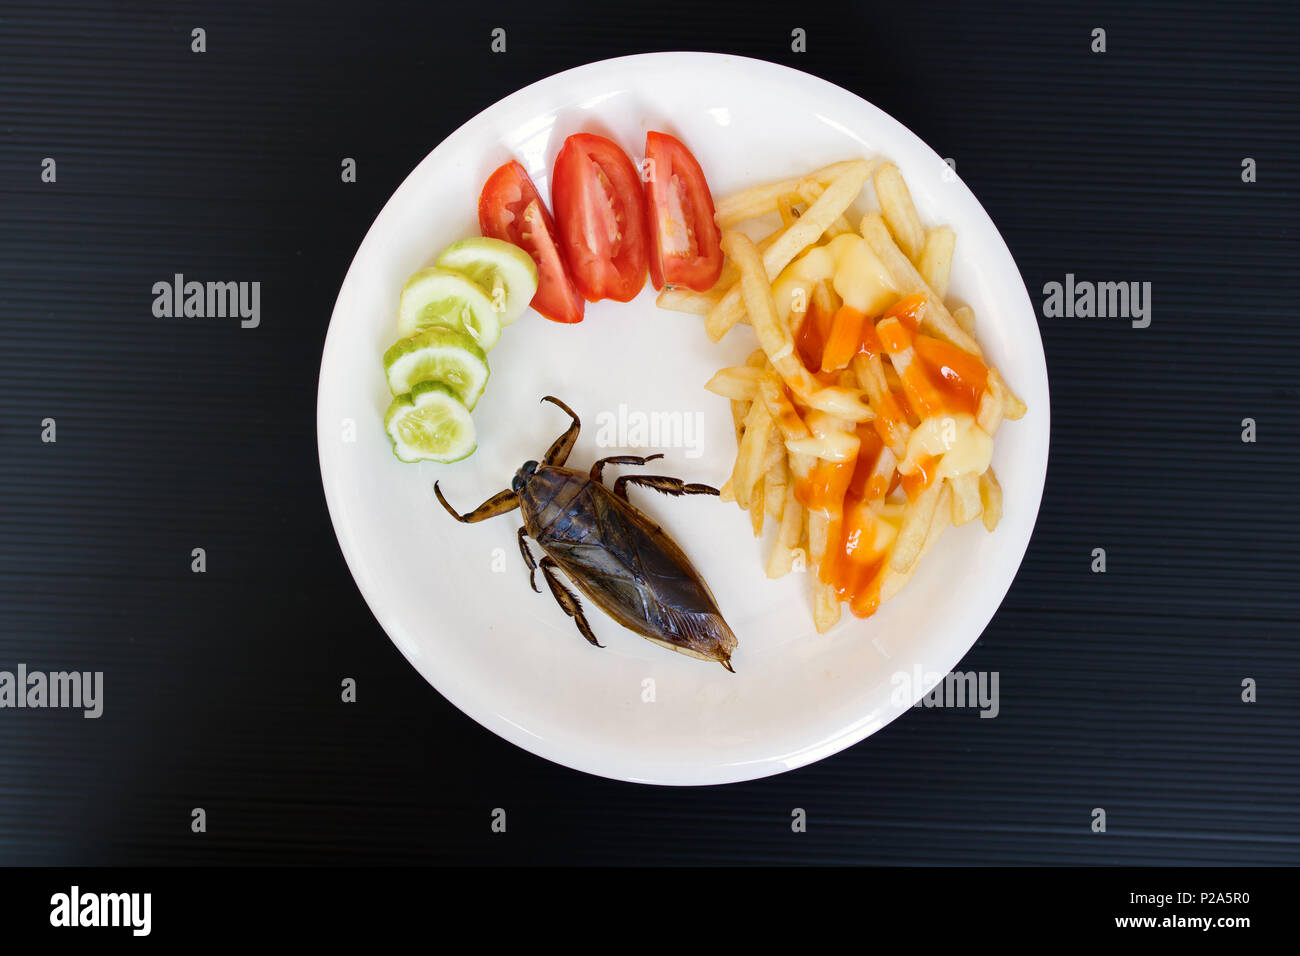 Angebot von essbaren Insekten auf einem Teller. Gebratener Riesenwasserkäfer - Lethocerus indicus mit Pommes frites und Gemüse auf einem Teller. Stockfoto